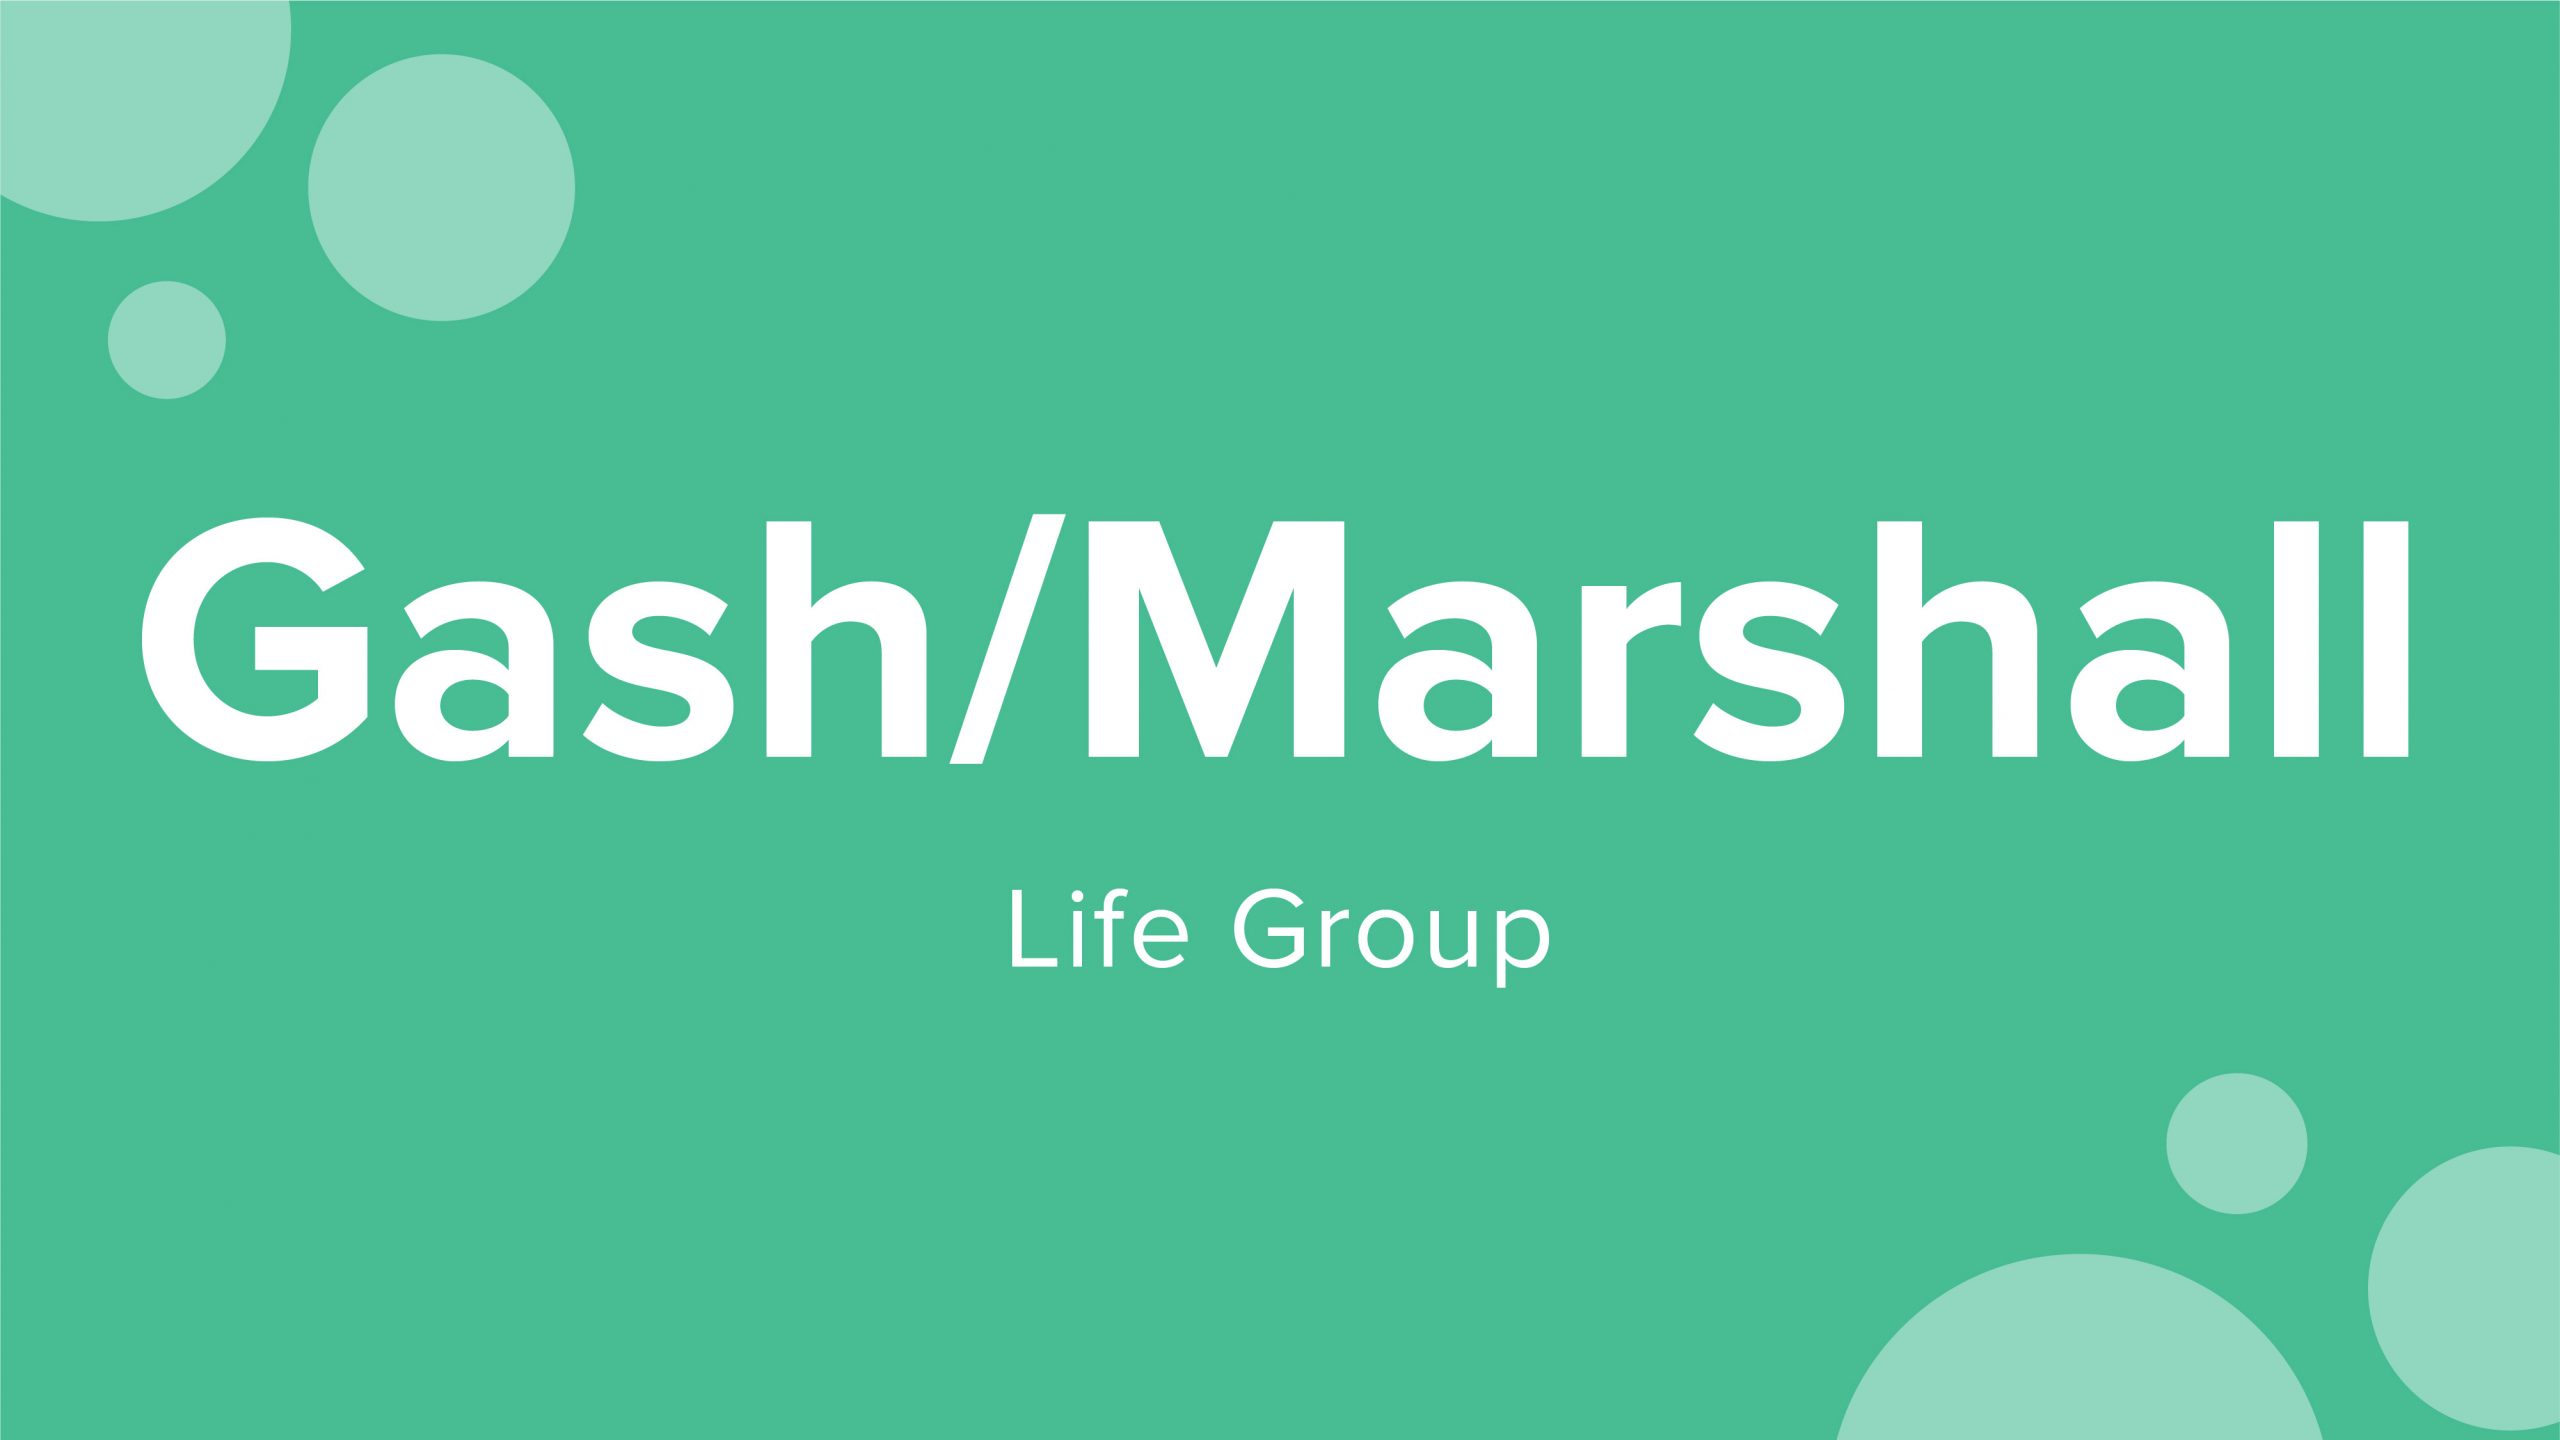 Gash/Marshall Life Group